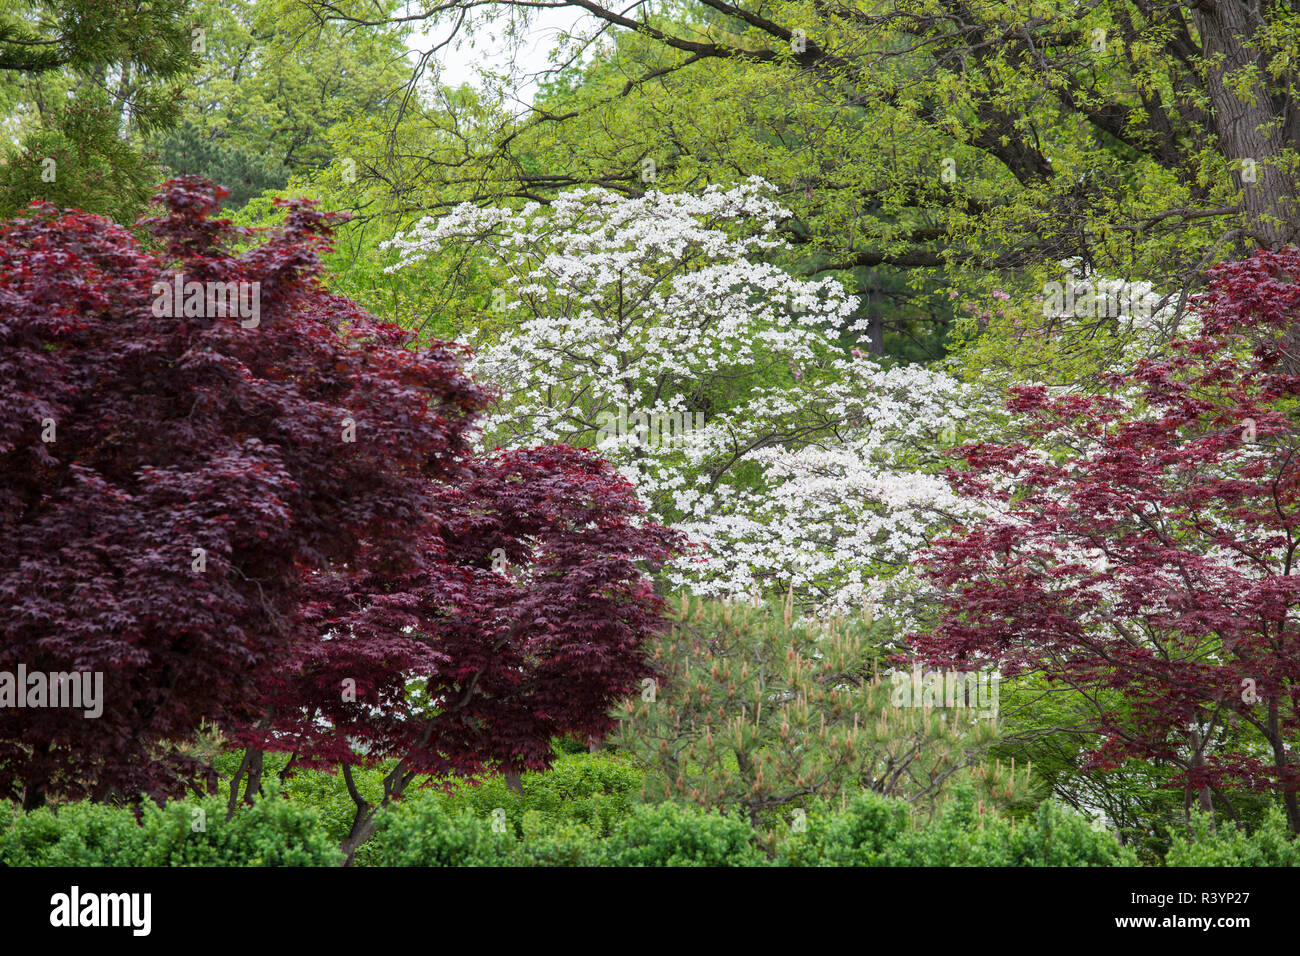 Japanischer Garten im Frühling, Missouri Botanical Garden, St. Louis, Missouri Stockfoto